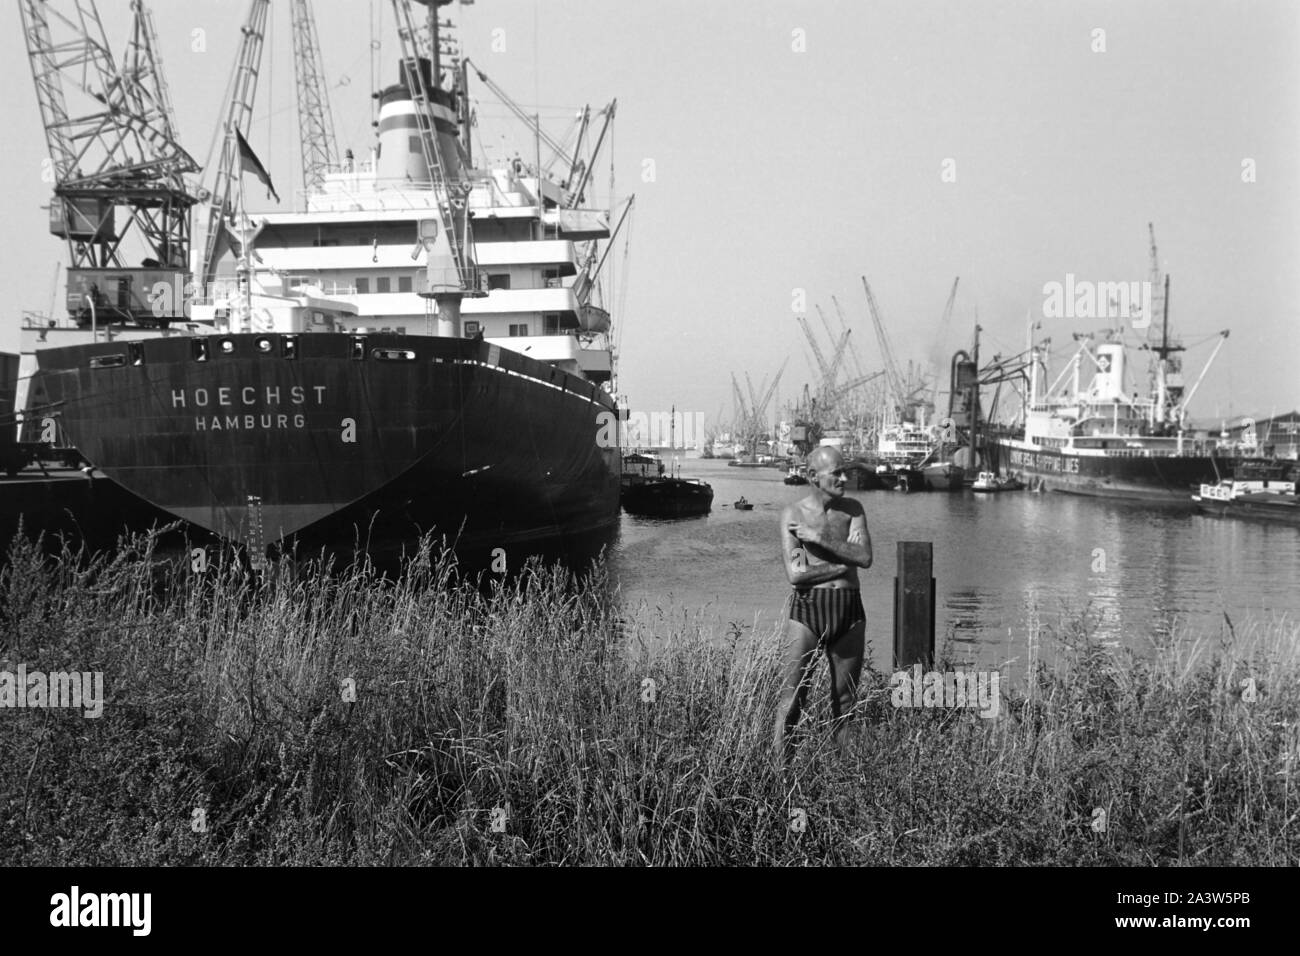 Semicontainerschiff 'Hoechst' aus Hamburg im Hafen von Rotterdam, Niederlande 1971. Halb Containerschiff "Hoechst" aus Hamburg am Hafen Rotterdam, die Niederlande 1971. Stockfoto